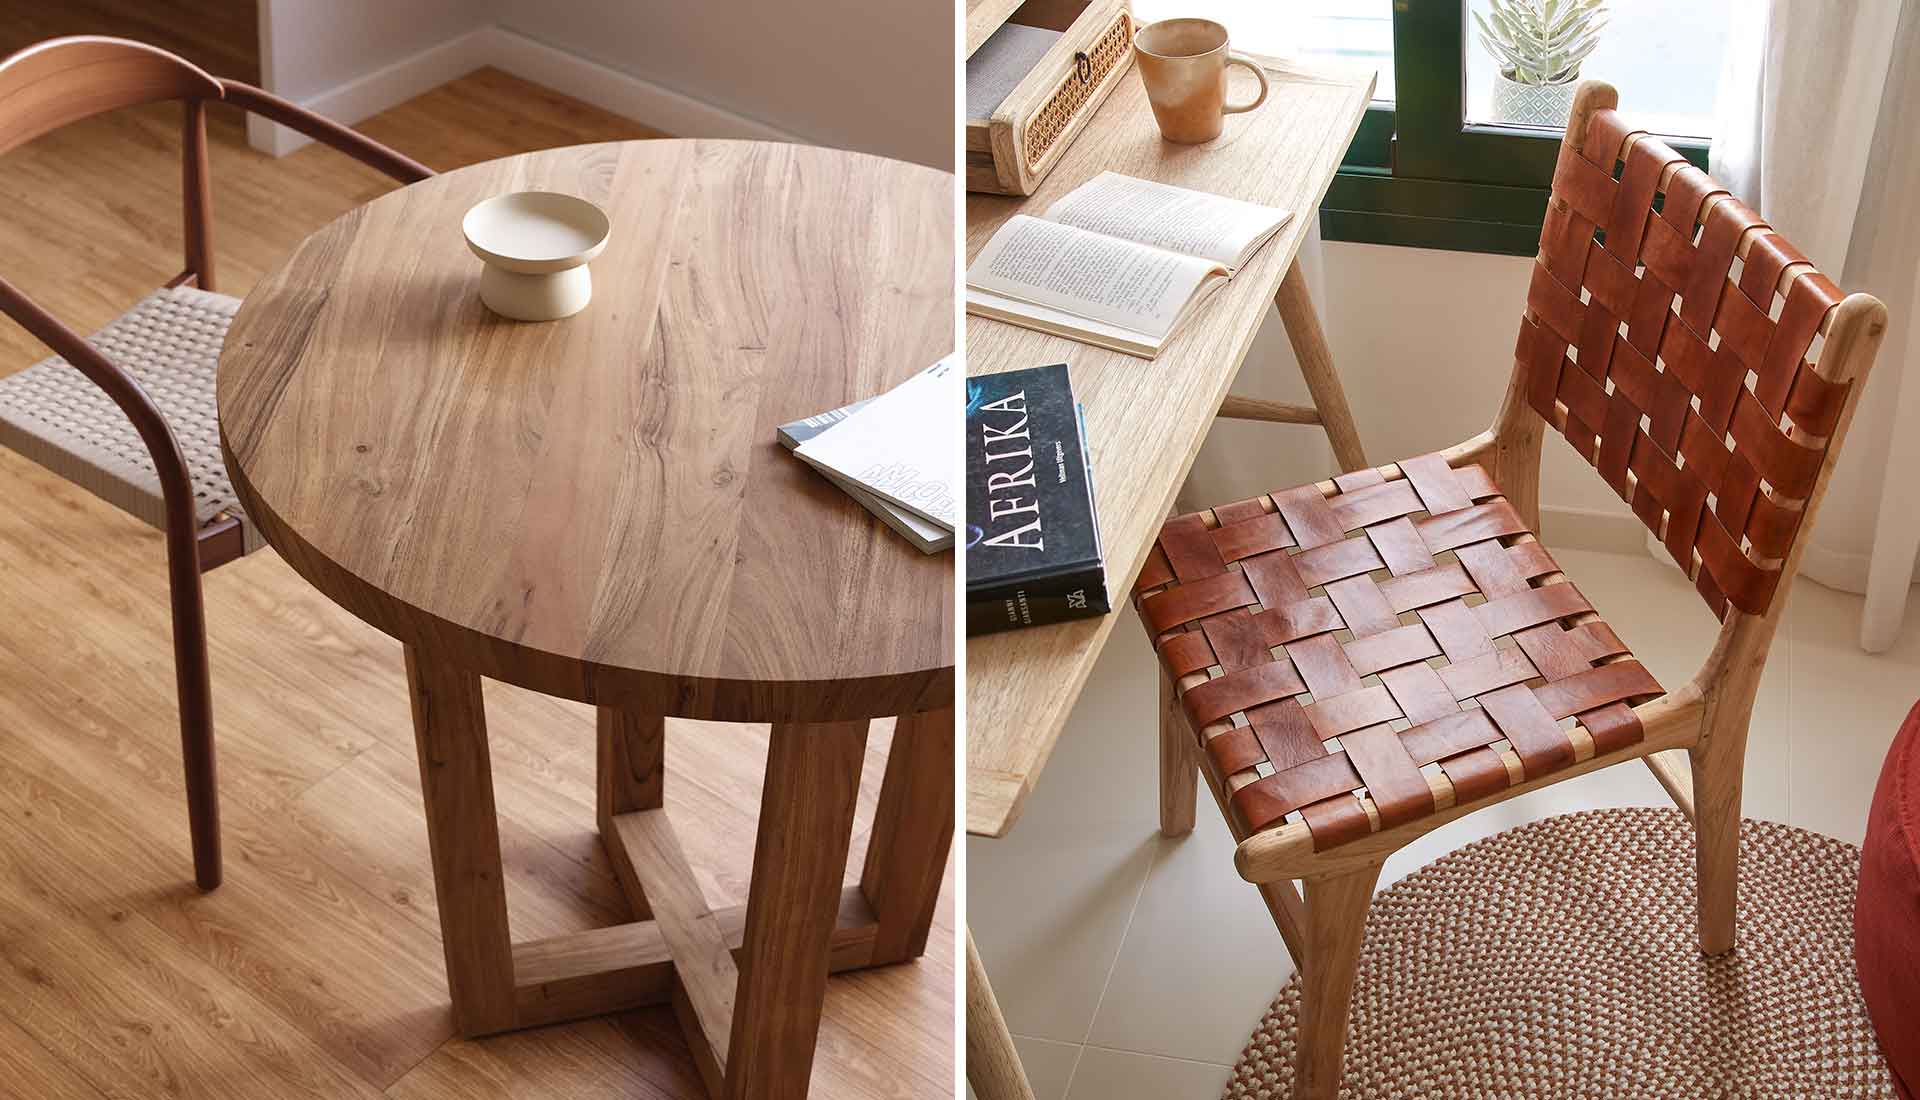 vepsalainen_kave_home_puinen_pyorea_ruokapoyta_nahkainen_tuoli_wooden_round_dining_table_leather_chair.jpg